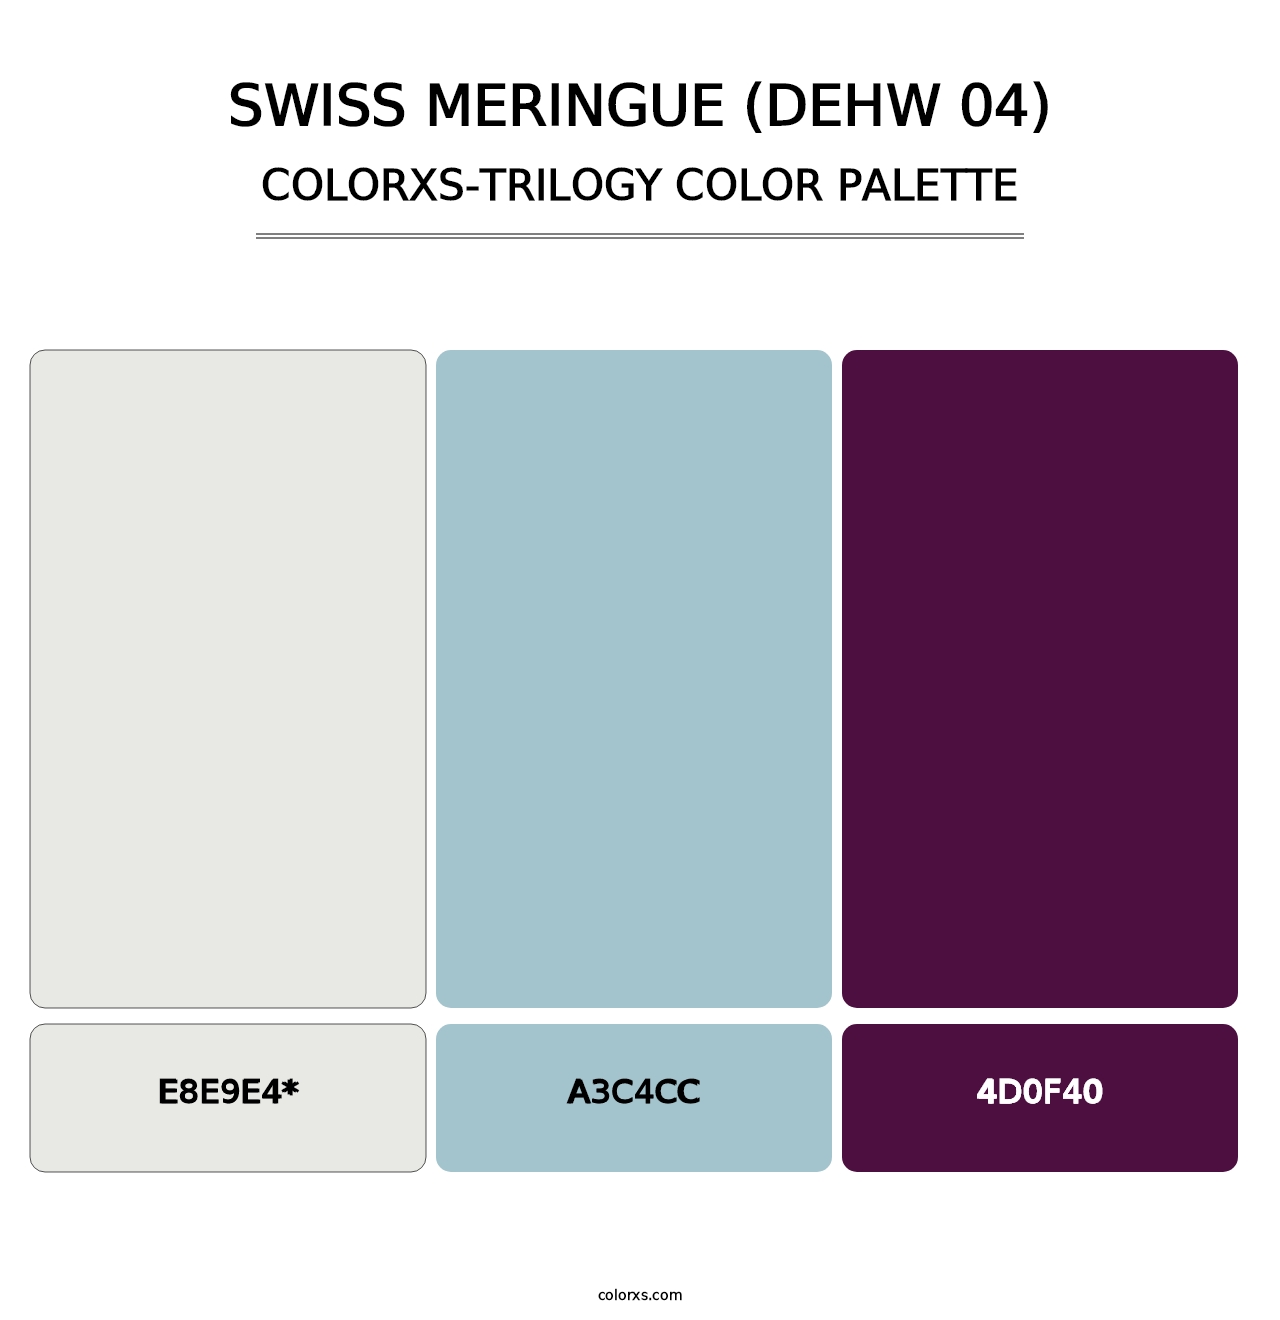 Swiss Meringue (DEHW 04) - Colorxs Trilogy Palette